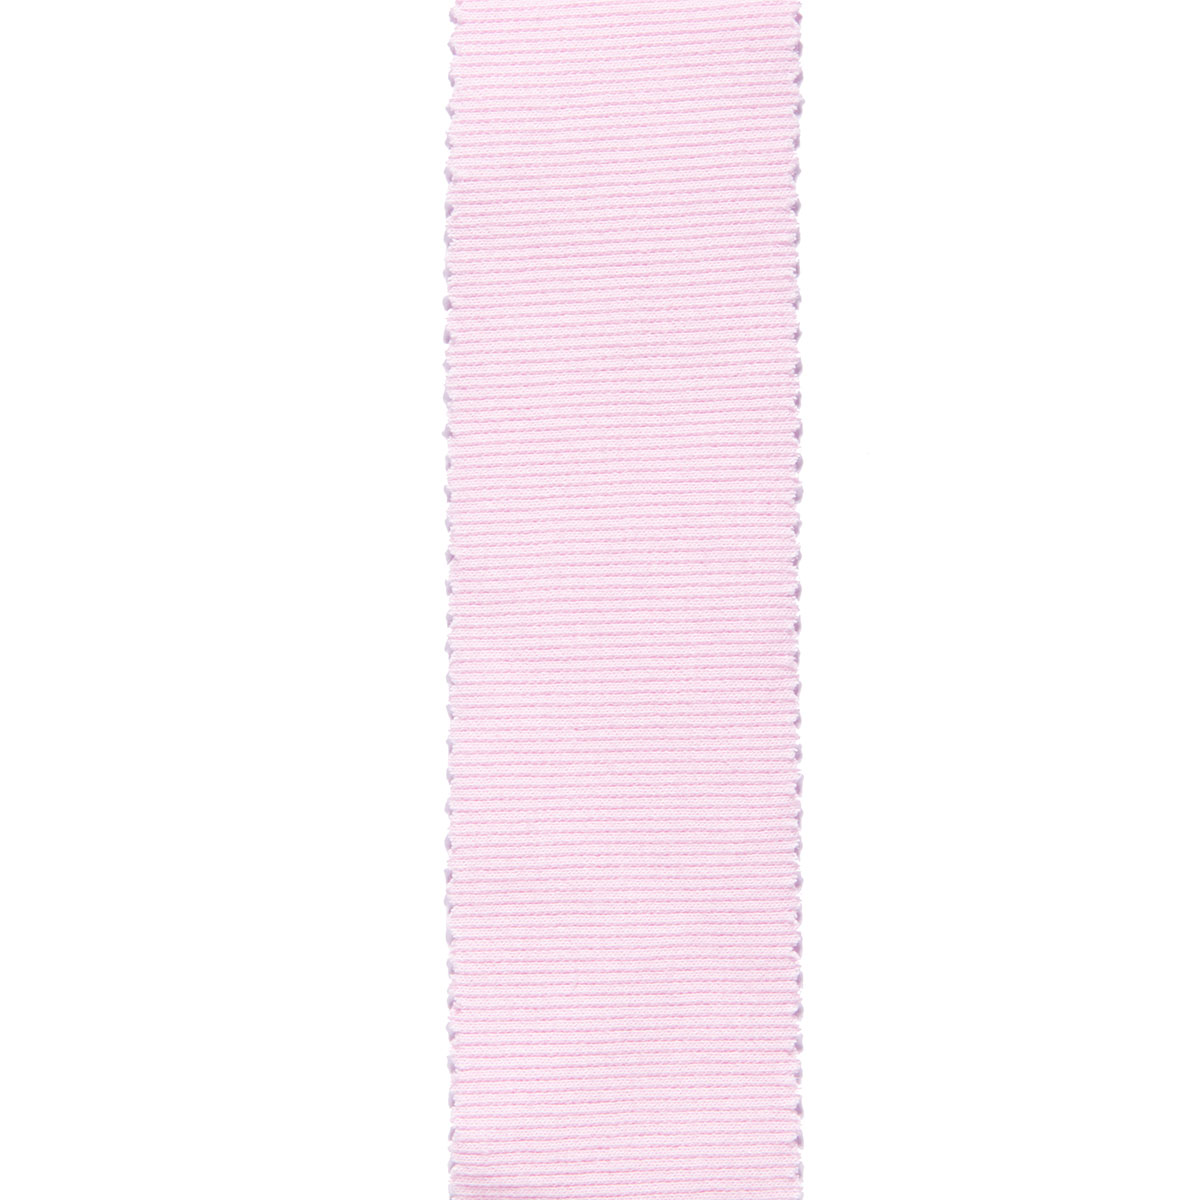 Dekostoff Gisele rosa in 40cm Breite (METERWARE) Baumwollstoff Stoff aus 97% Baumwolle